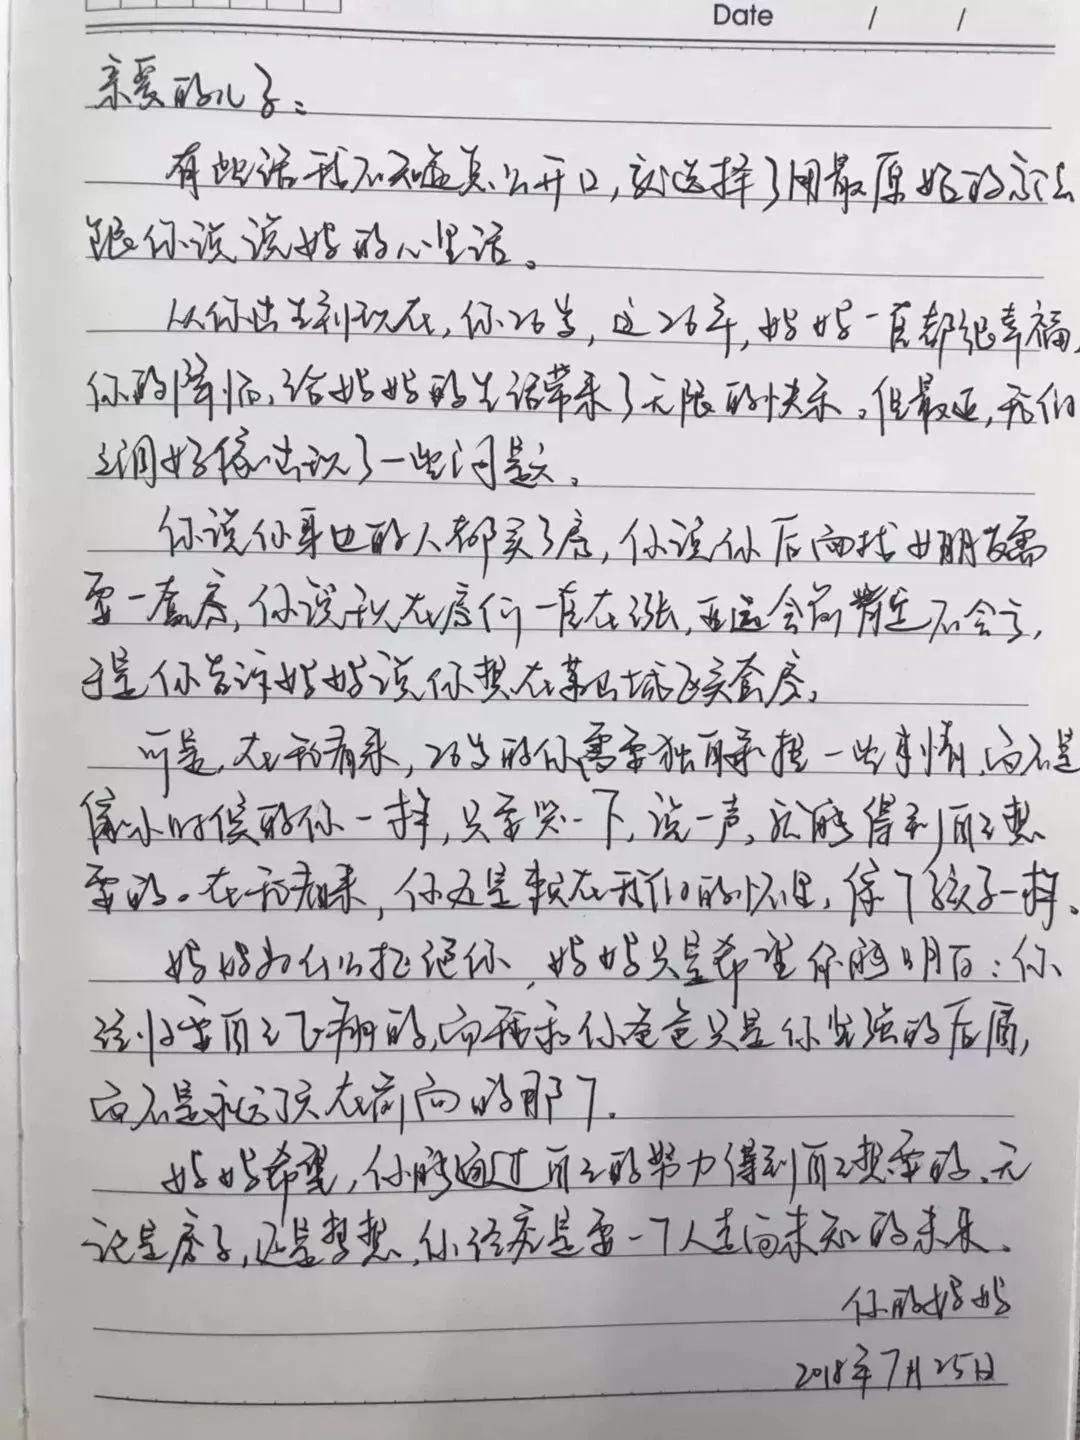 该图是一位杭州的妈妈写给儿子的一封手写信,信中的焦点是"房子".图片